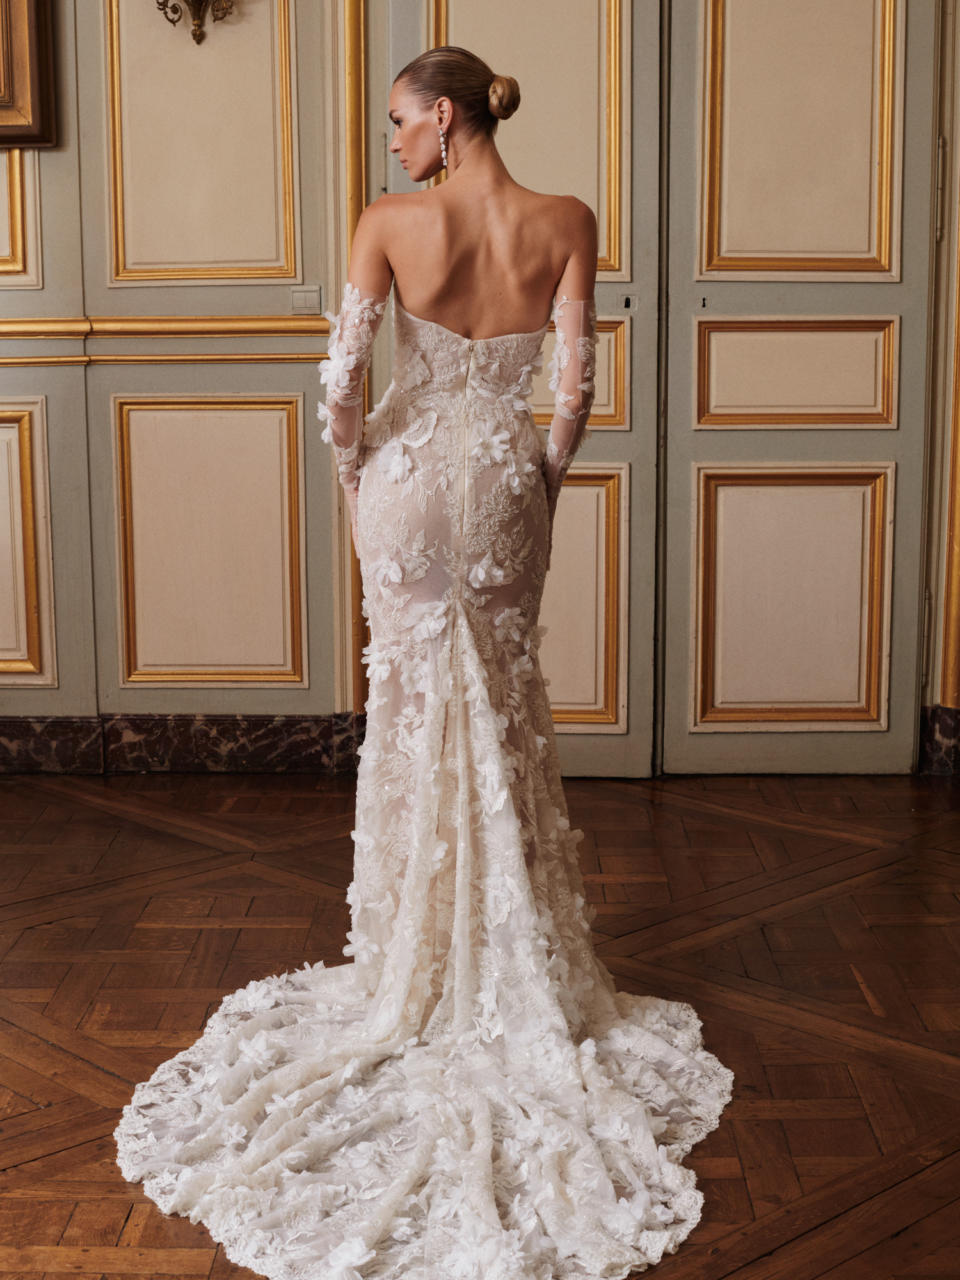 What Type of Bra Should I Wear With My Wedding Dress? - Galia Lahav